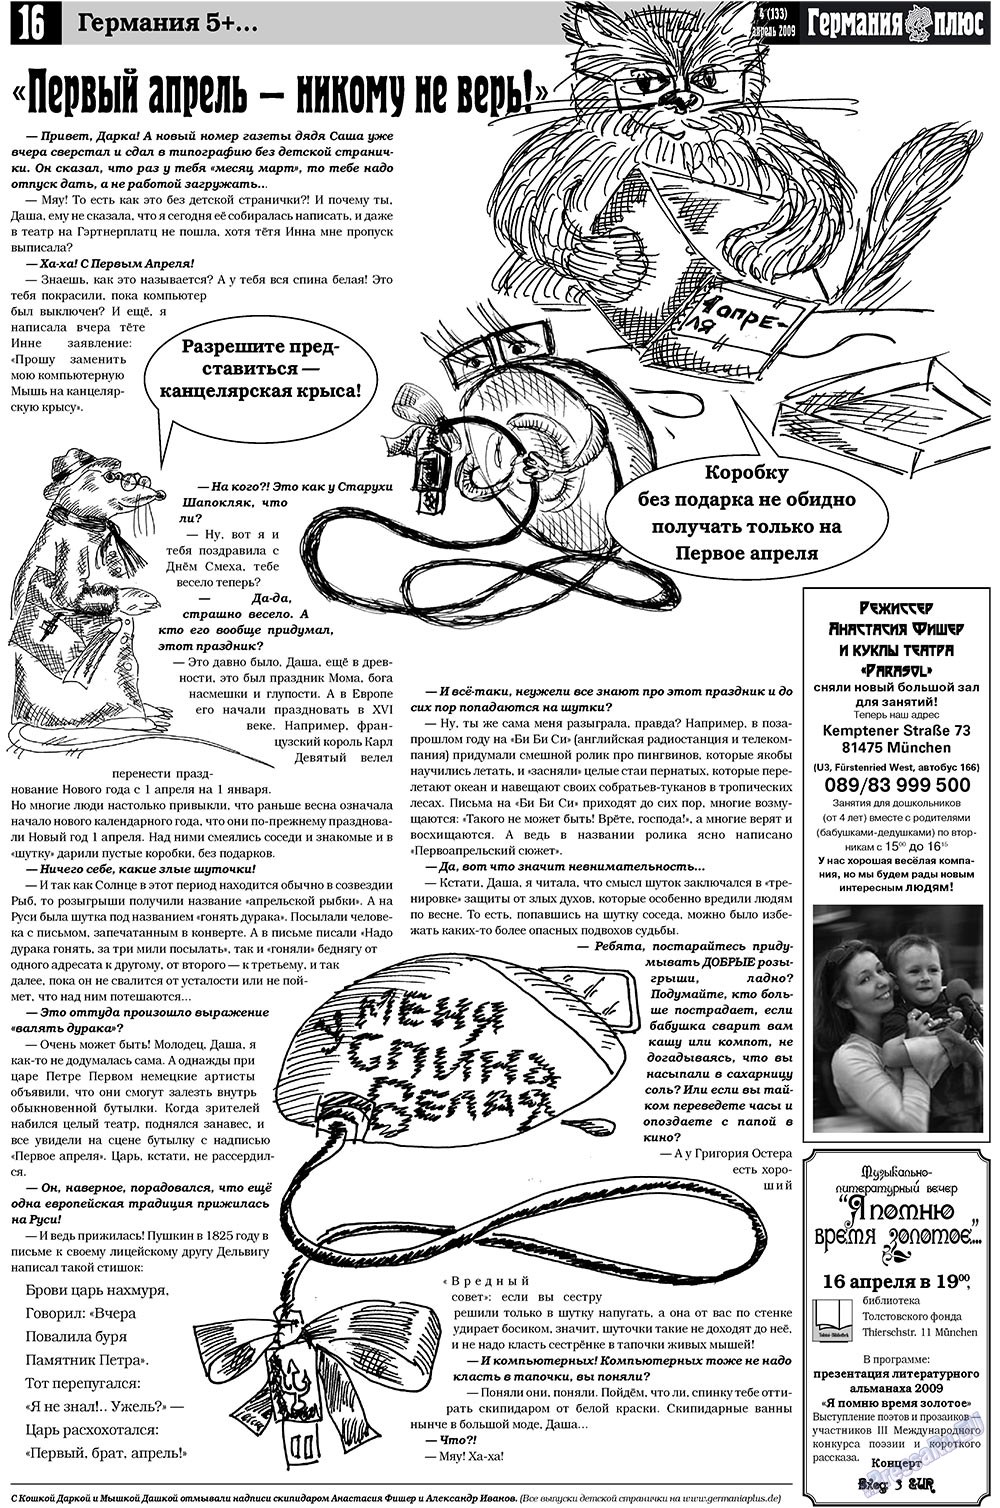 Германия плюс, газета. 2009 №4 стр.20